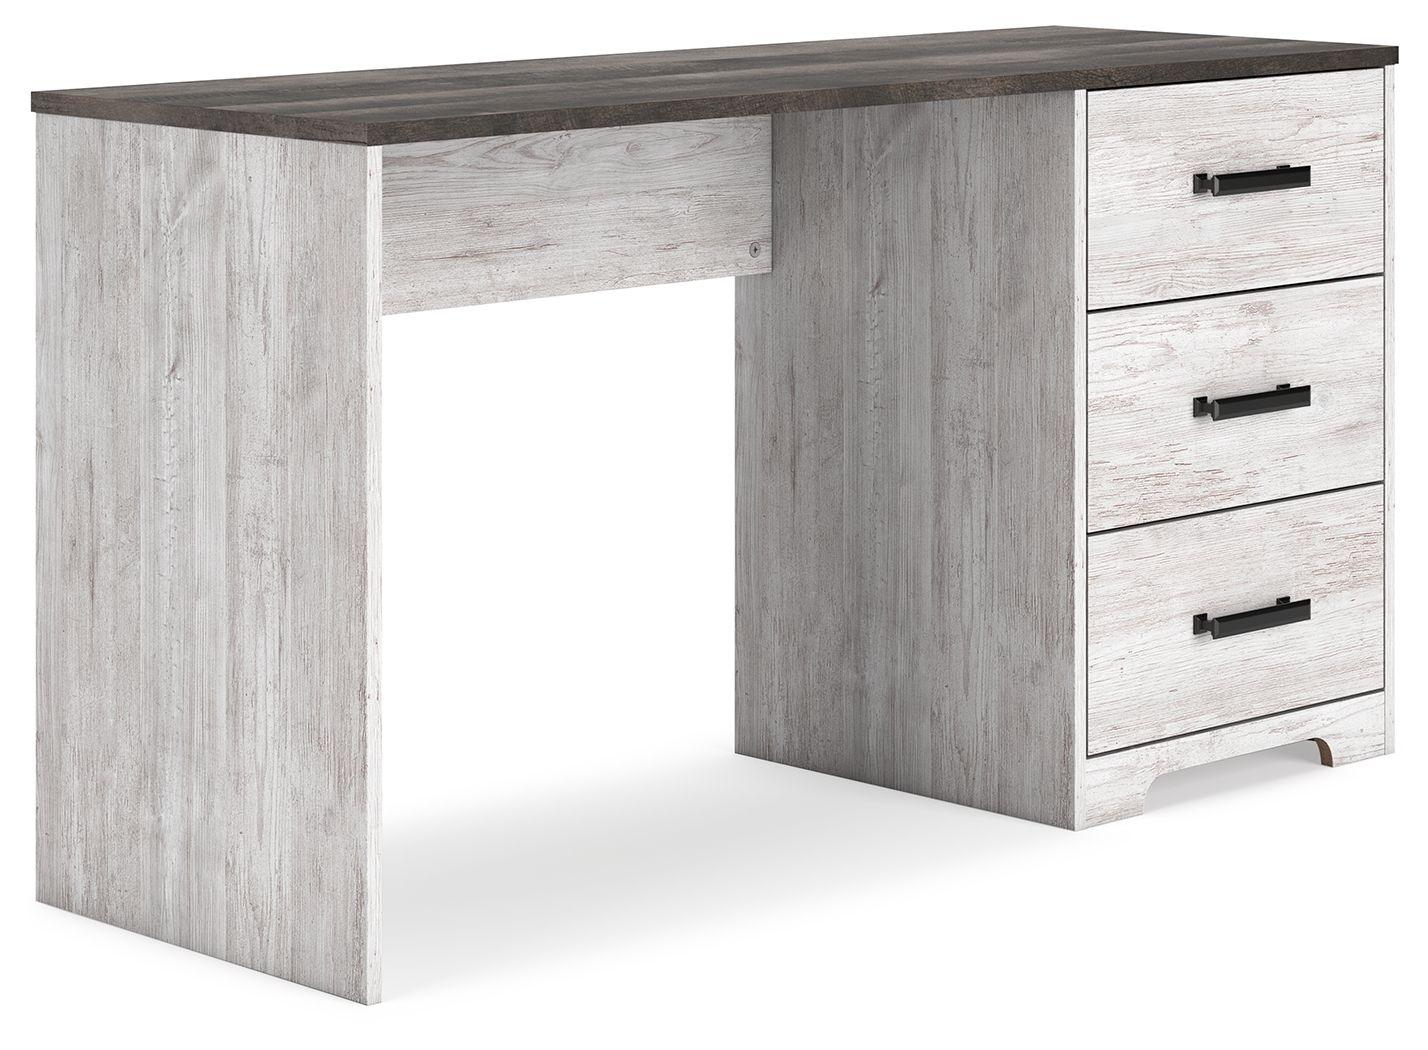 Signature Design by Ashley® - Shawburn - White / Dark Charcoal Gray - Home Office Desk - 5th Avenue Furniture